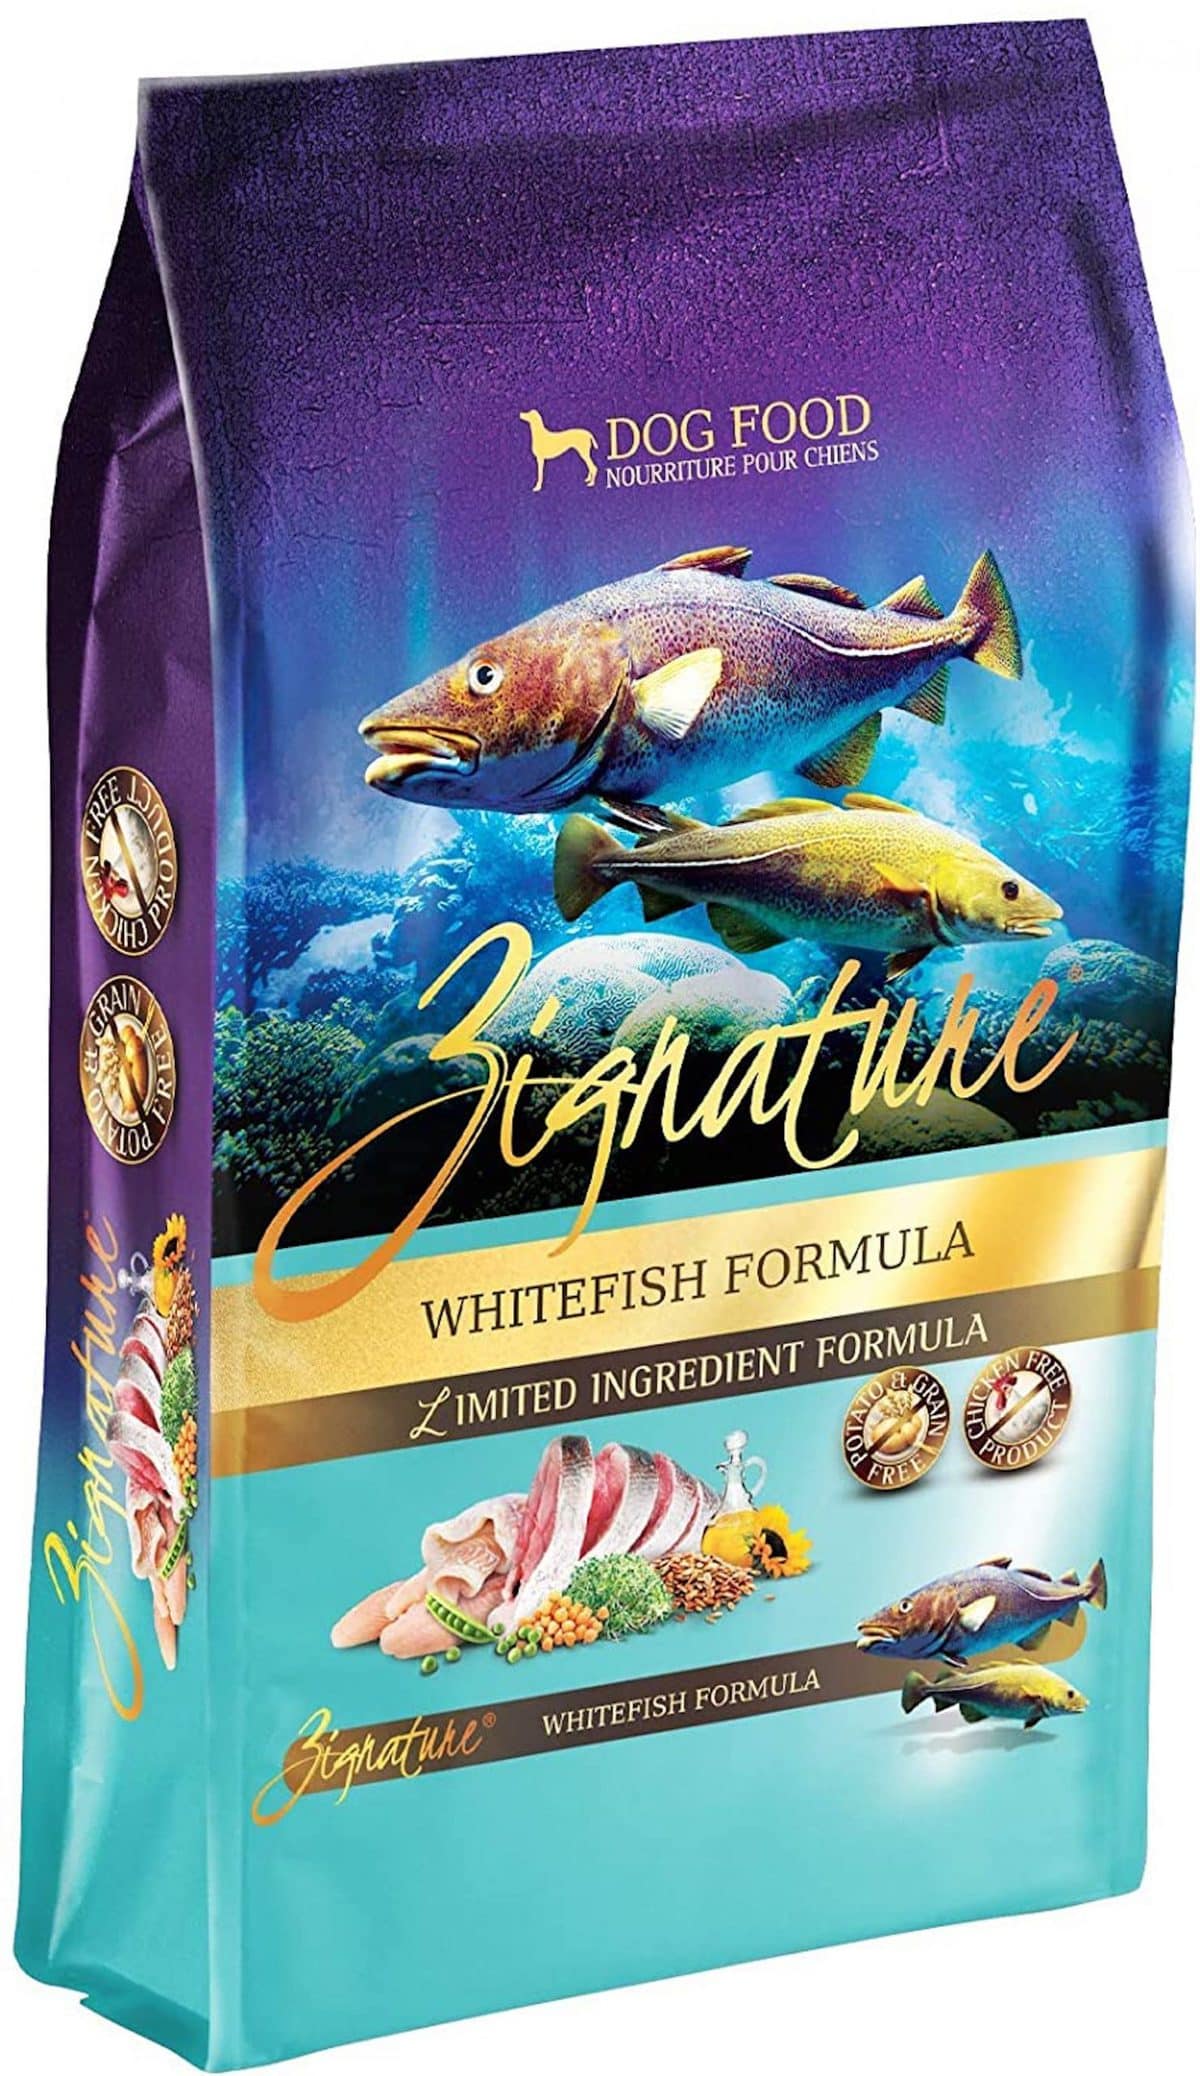 Zignature Whitefish Formula Dog Food